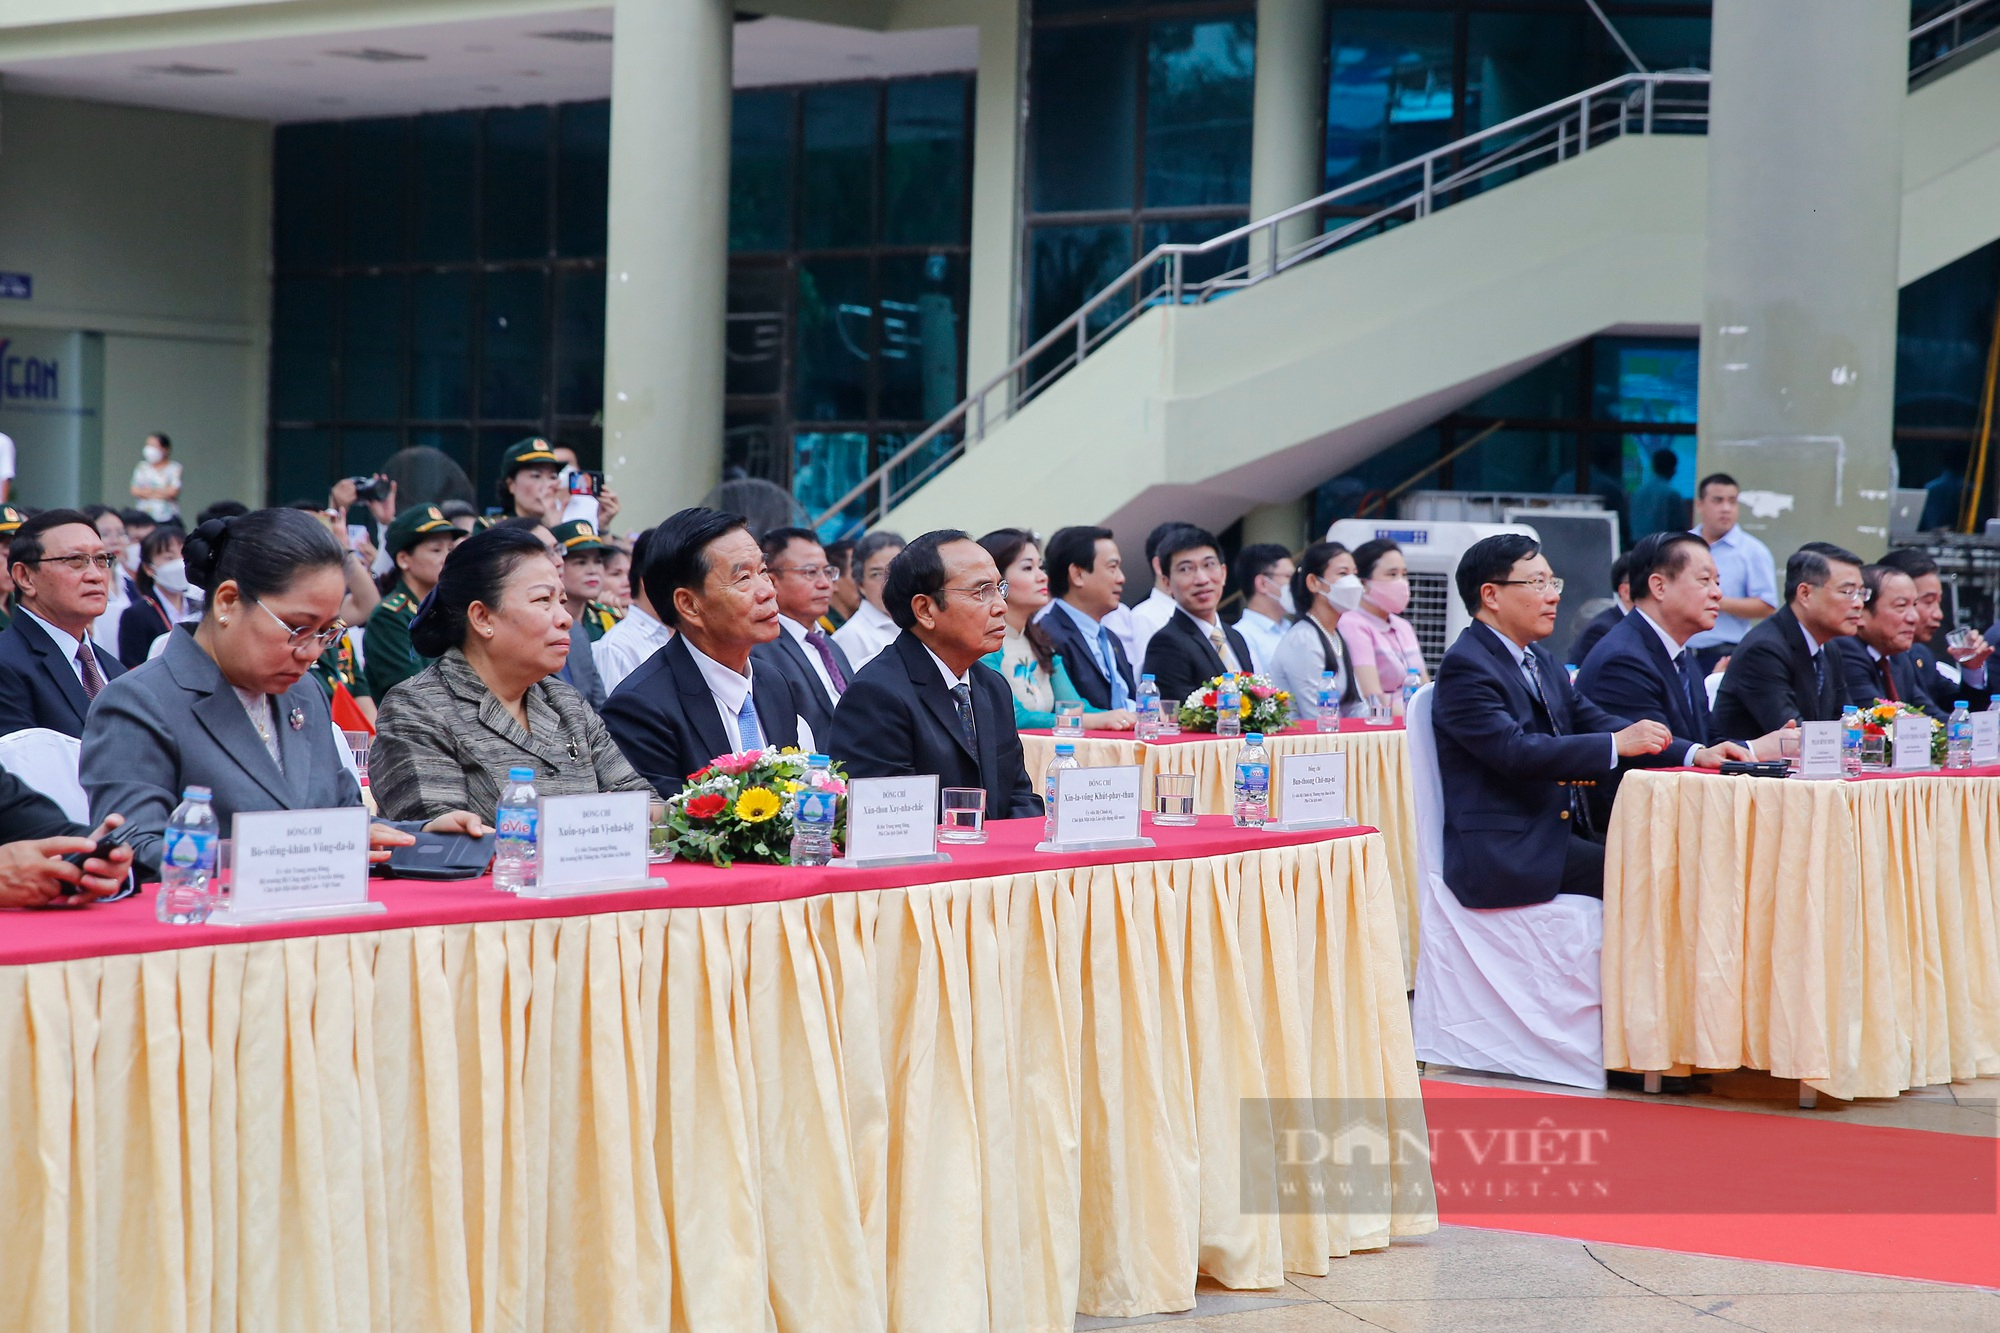 Phó Chủ tịch nước Lào dự Khai mạc triển lãm ảnh 'Tình hữu nghị Lào - Việt Nam đời đời bền vững' - Ảnh 4.